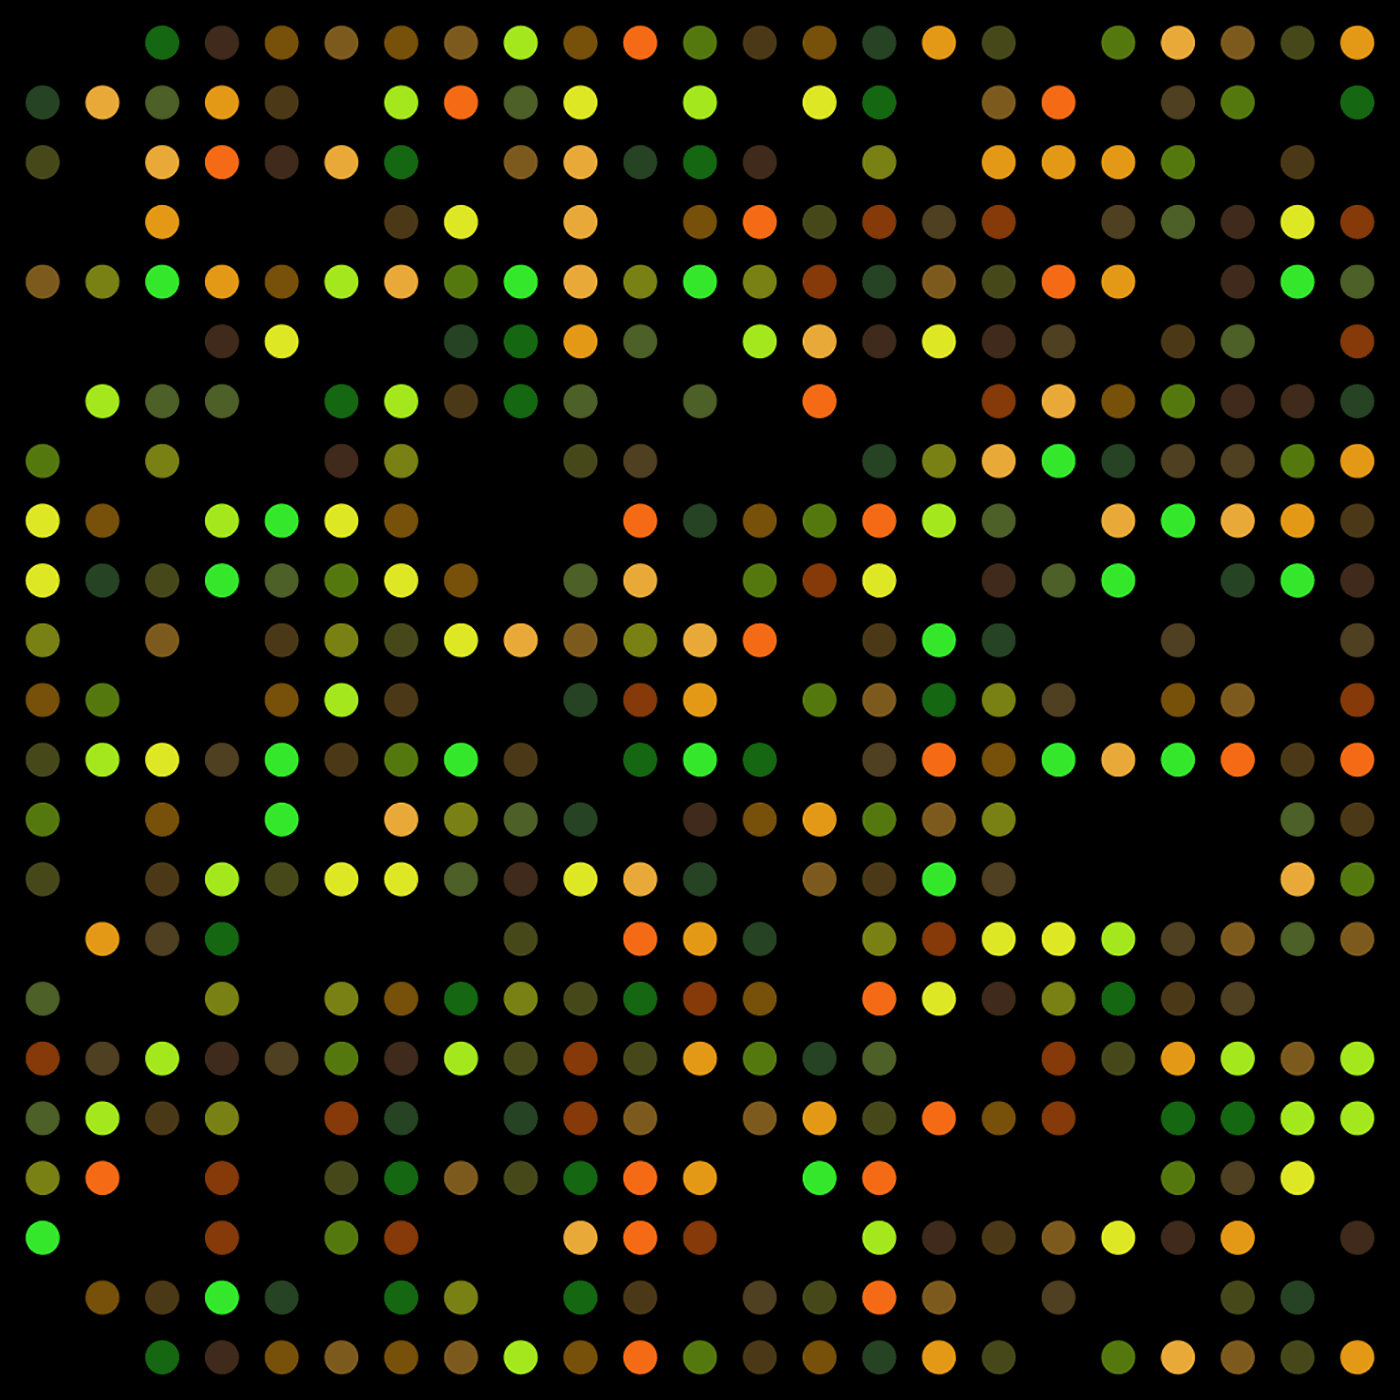 DNA micro array